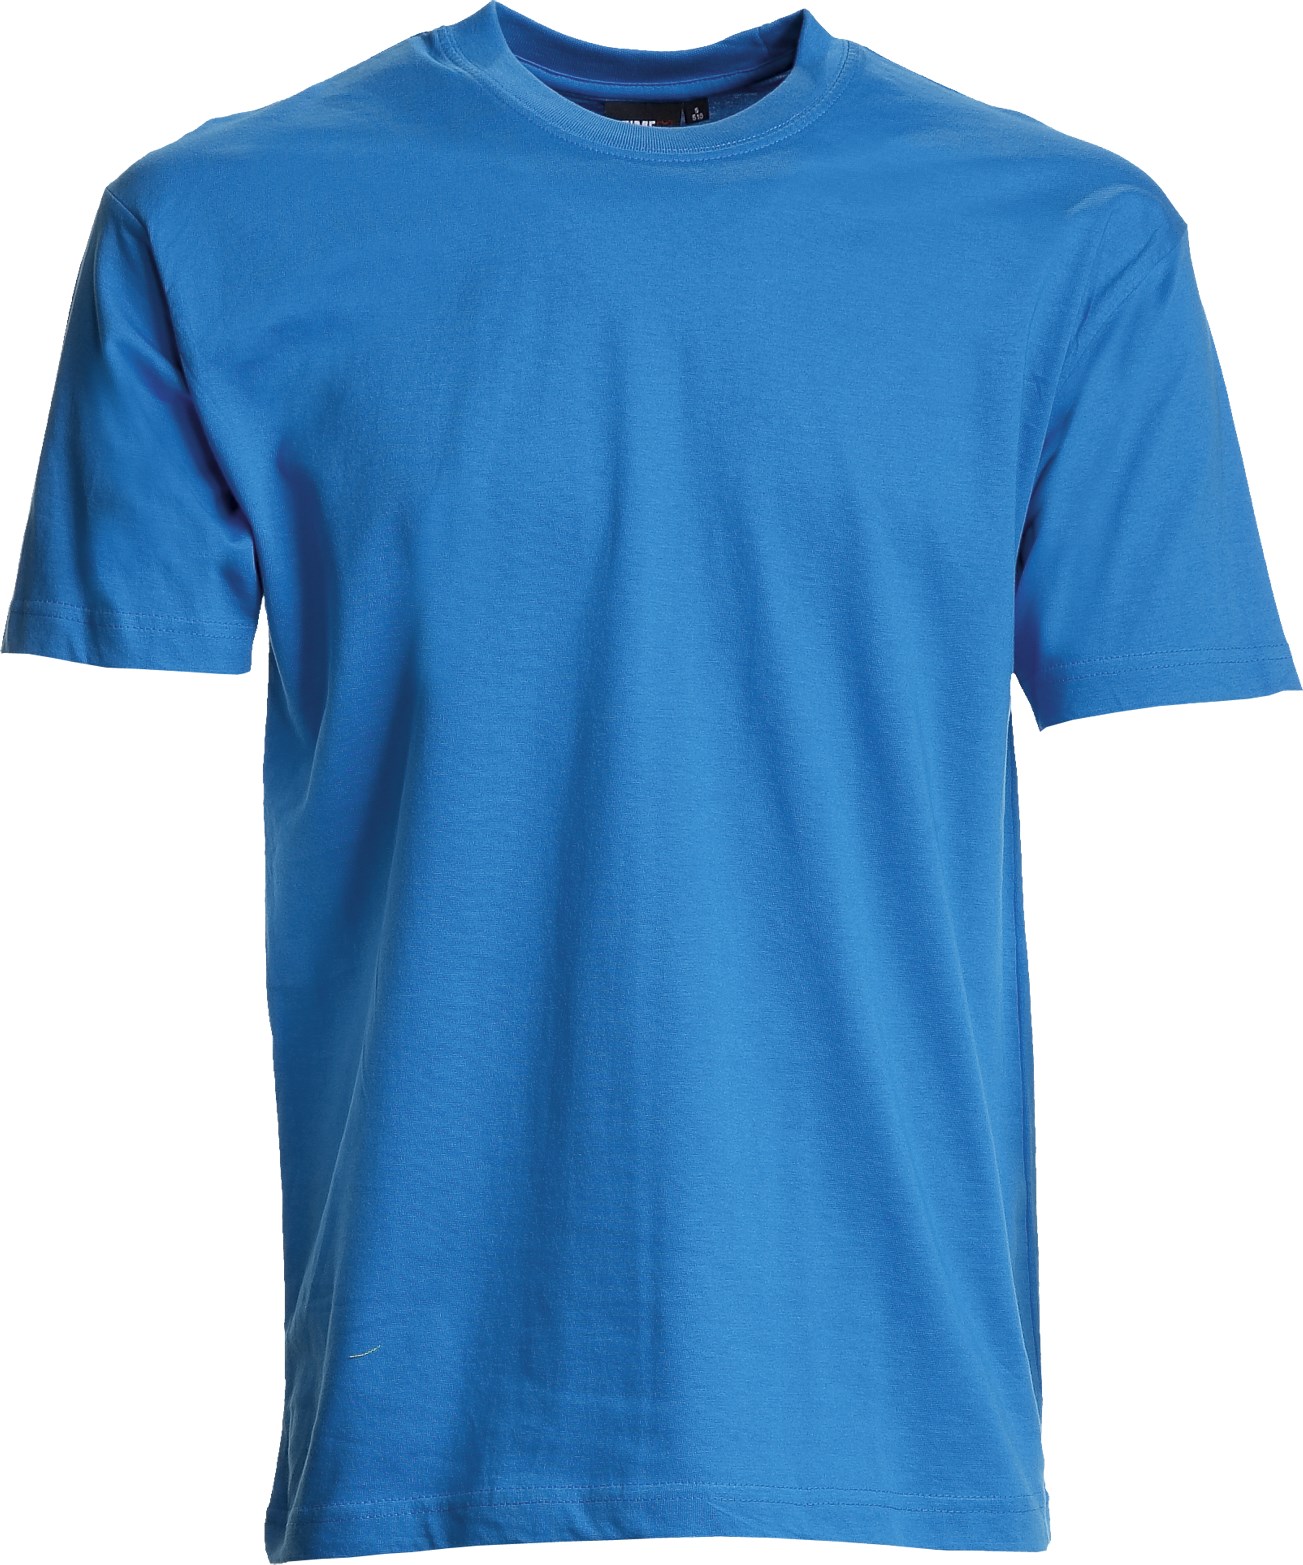 Unisex T-shirt, Basic (8150101)